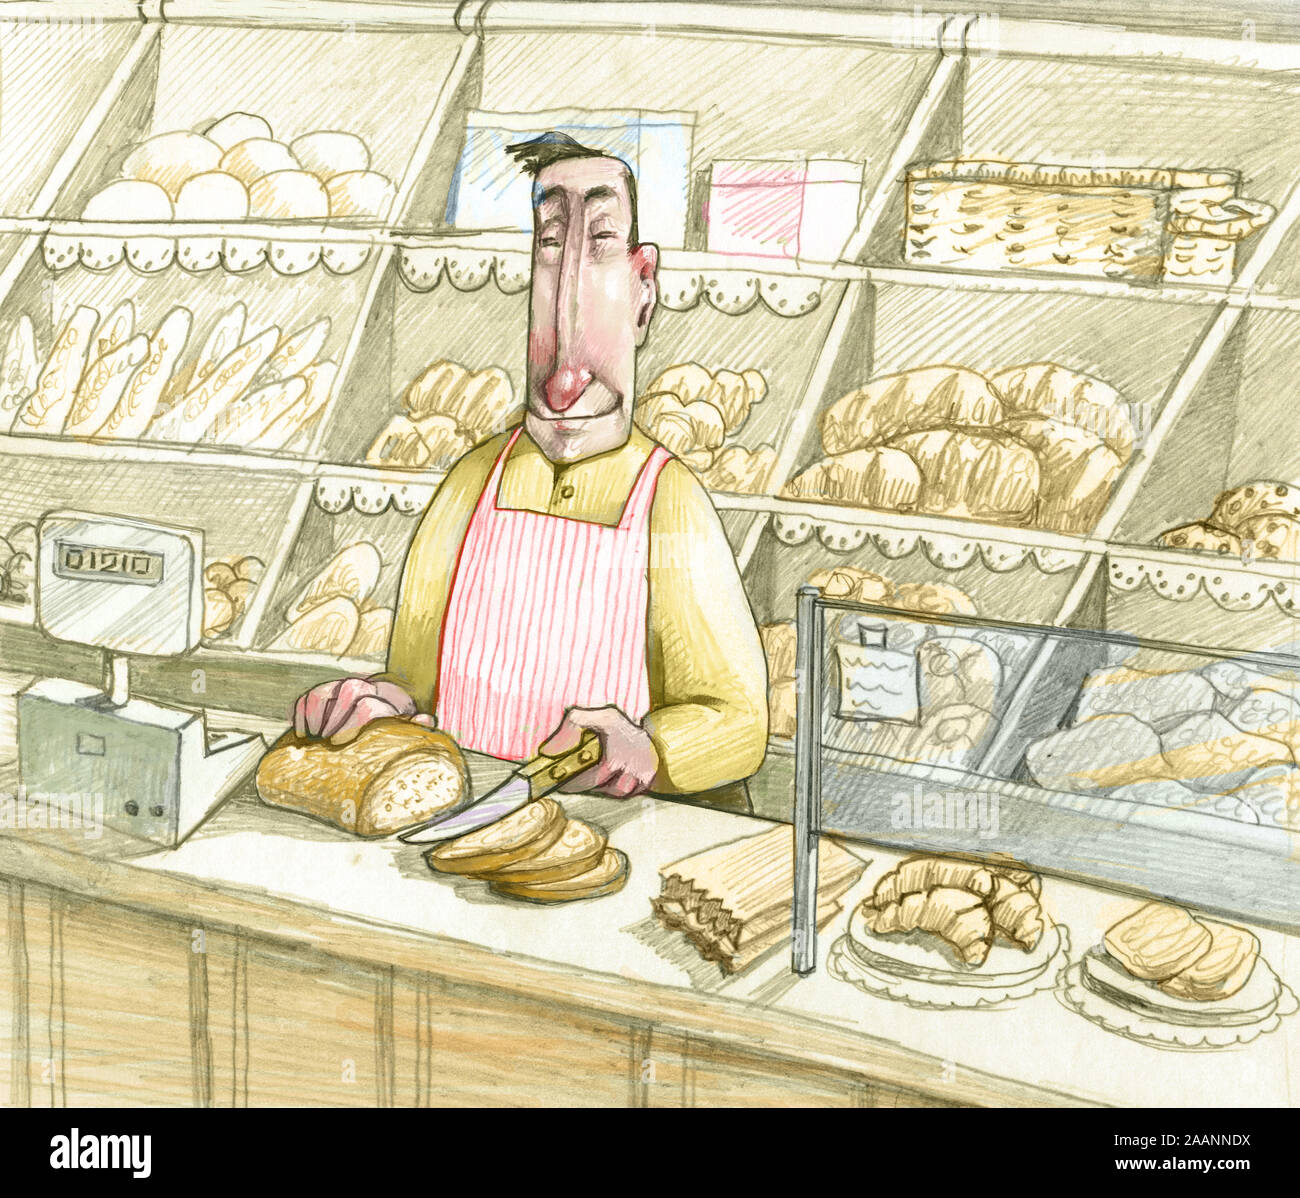 Drôle et Happy Baker le pain tranché au comptoir de sa boutique avec tant de différents types de pain Banque D'Images